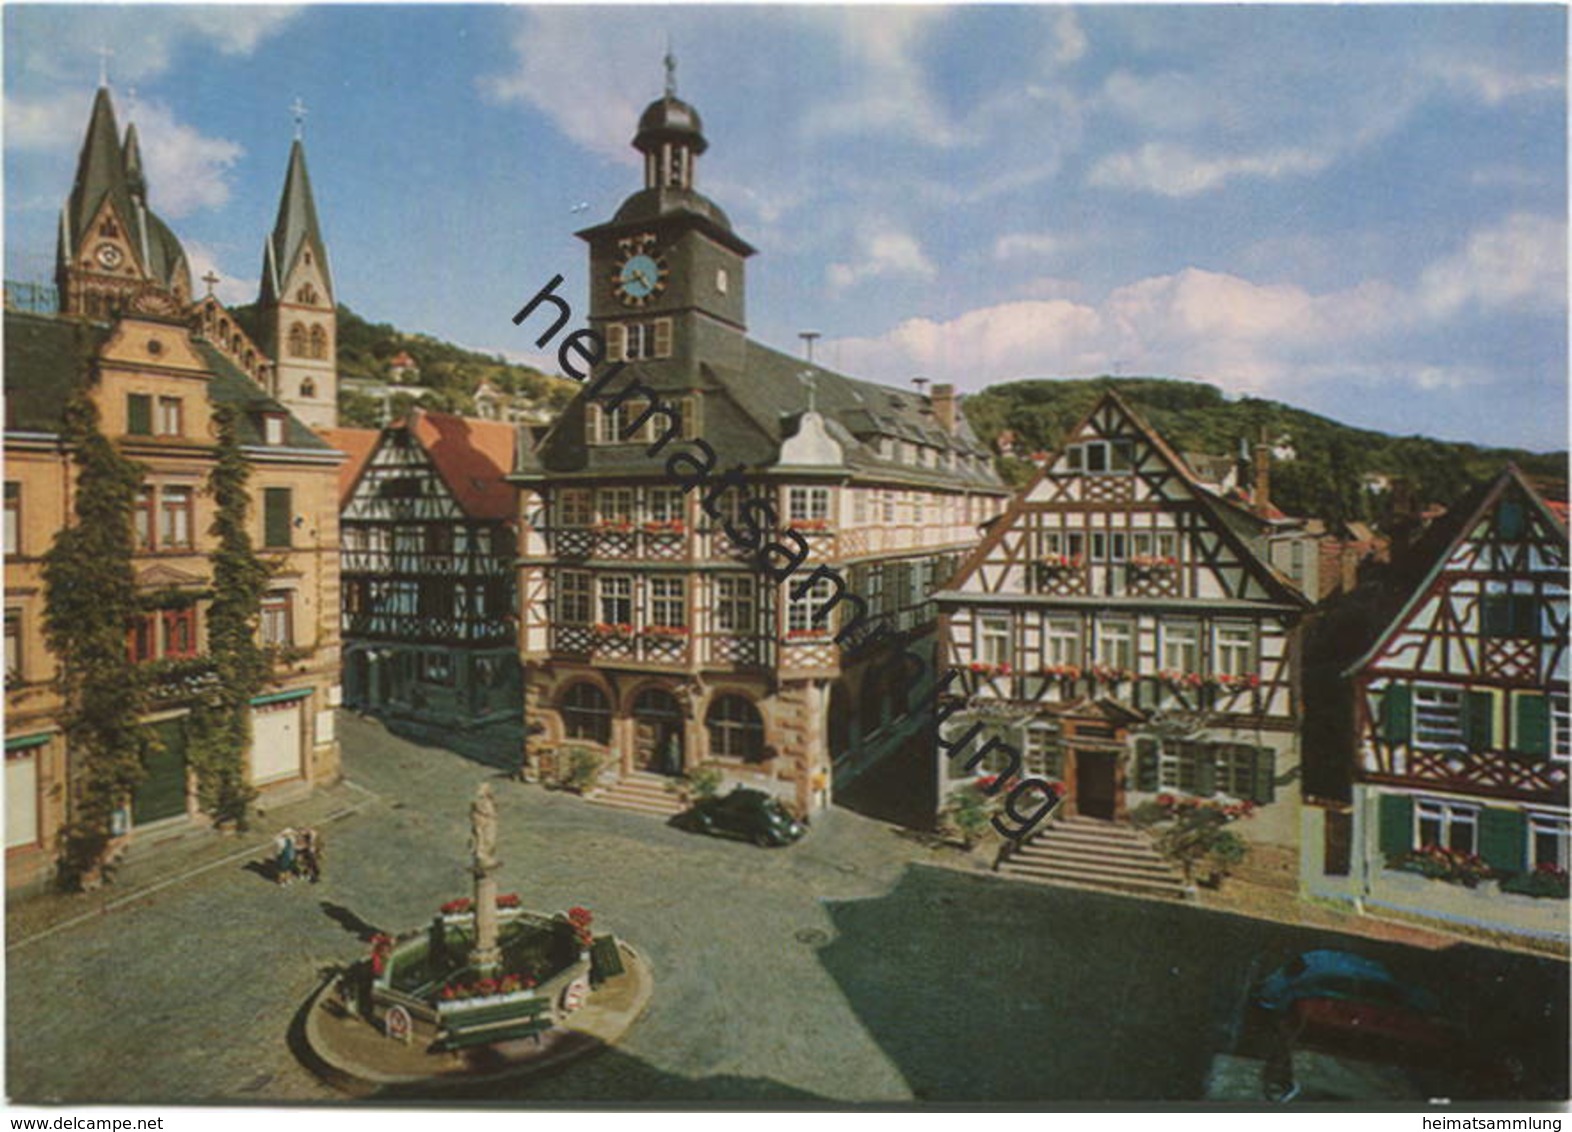 Heppenheim - Marktplatz Mit Rathaus Und Goldener Engel - AK Grossformat - Verlag Gebr. Metz Tübingen - Heppenheim